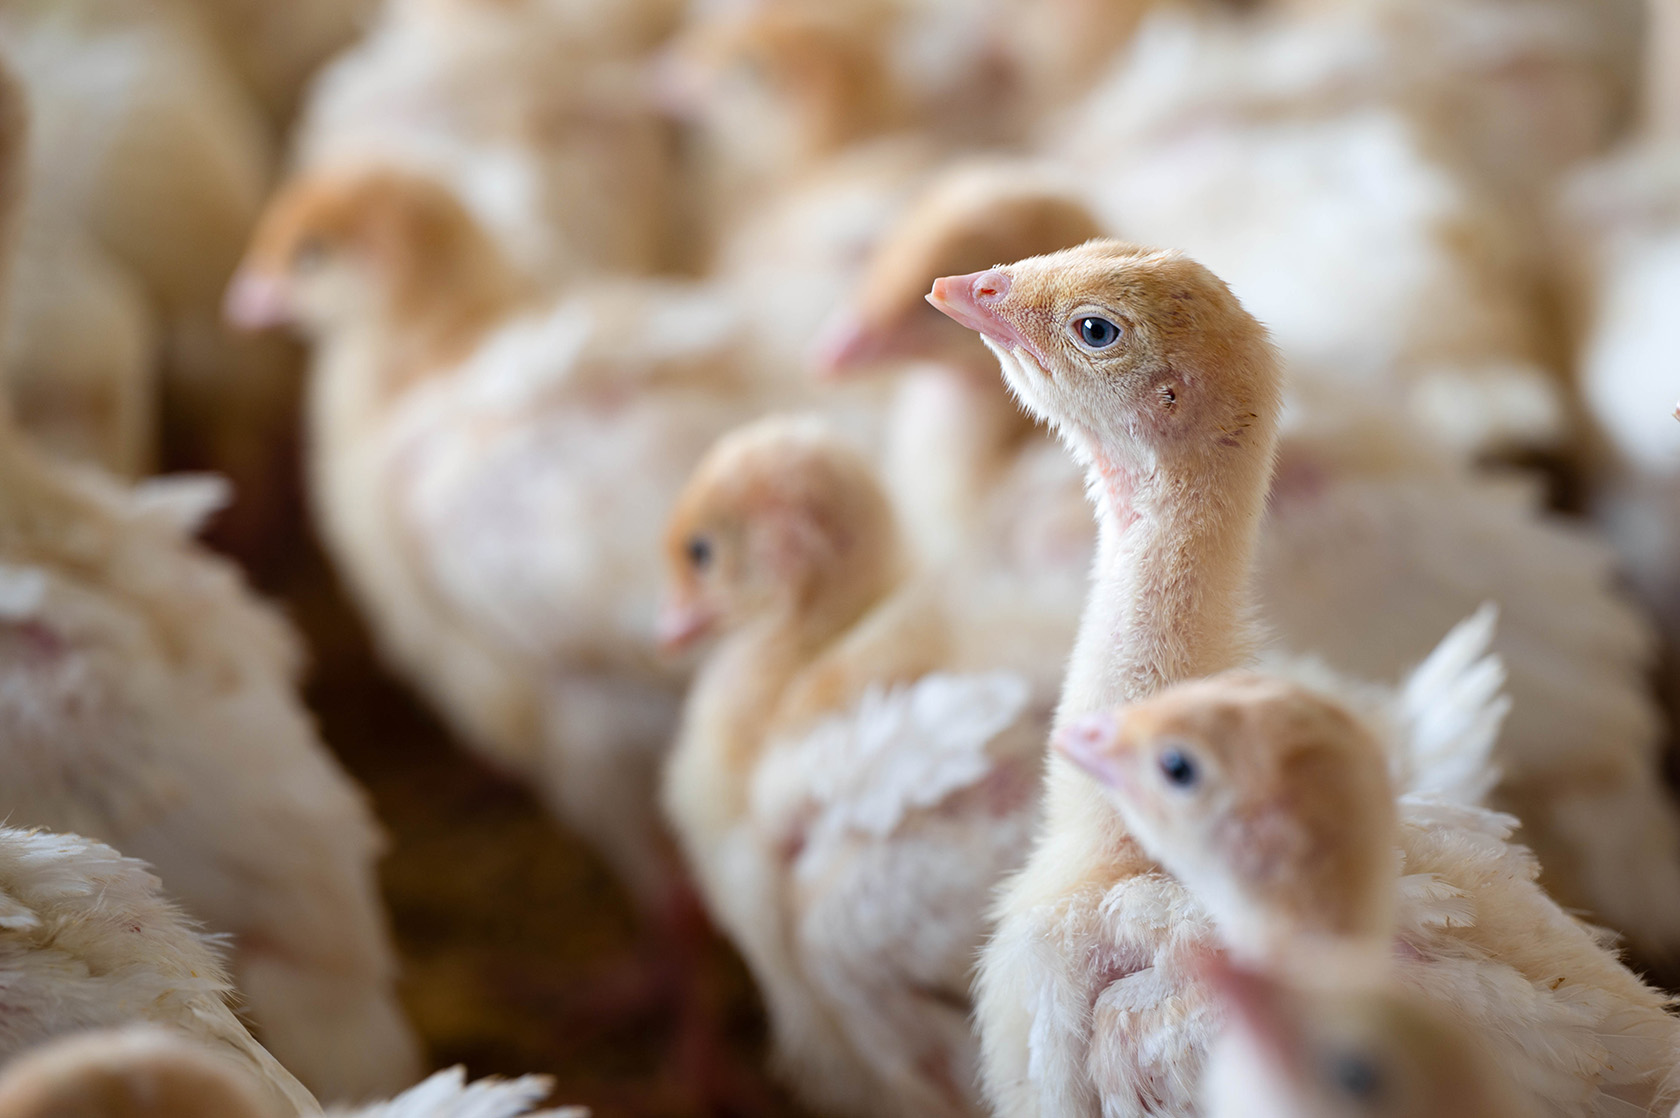 The Highly Pathogenic Avian Influenza (HPAI) virus has 